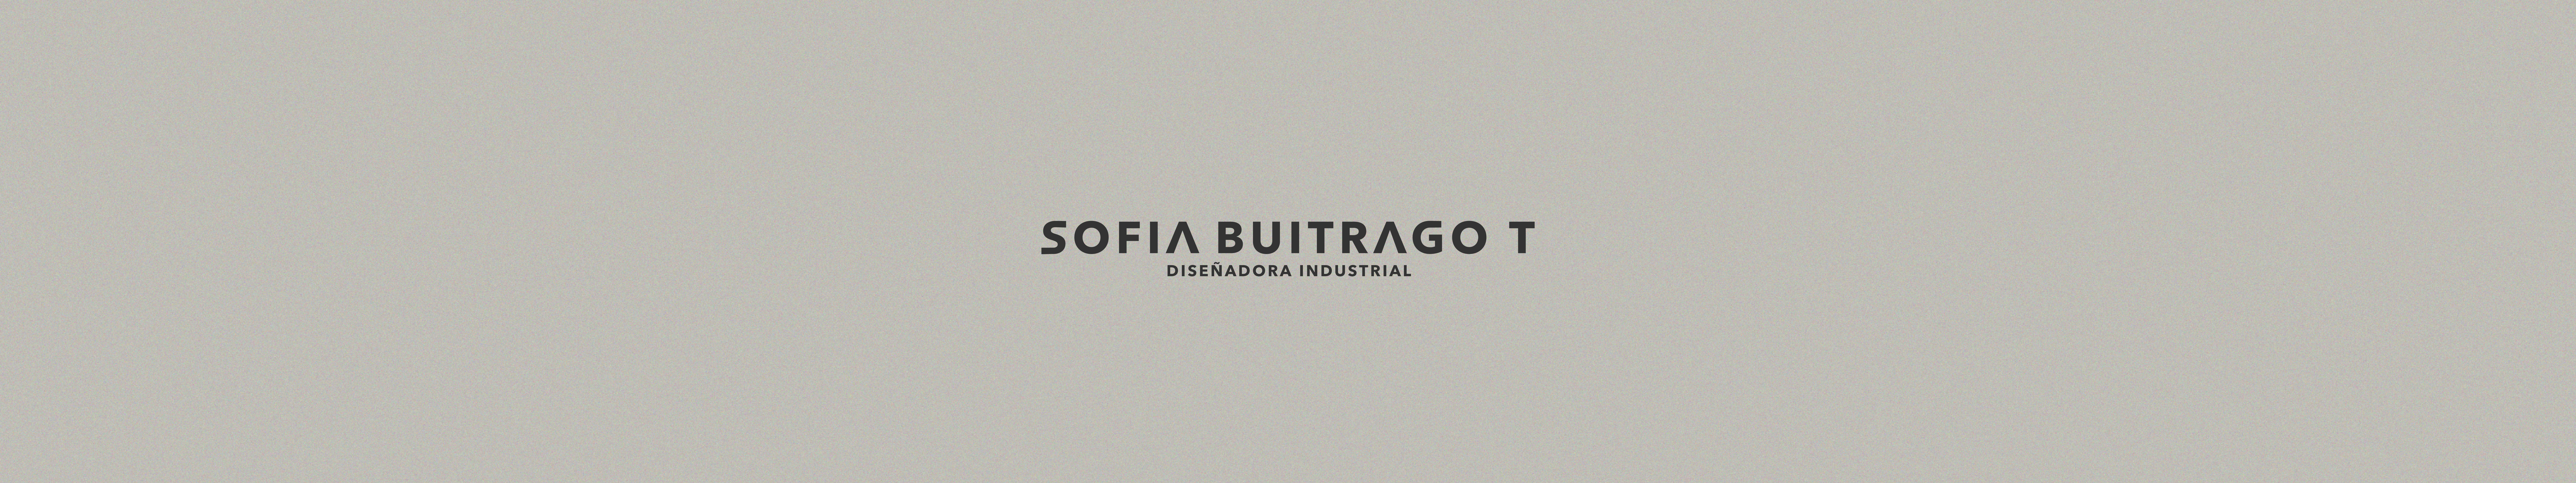 Sofia Buitrago Tapias's profile banner